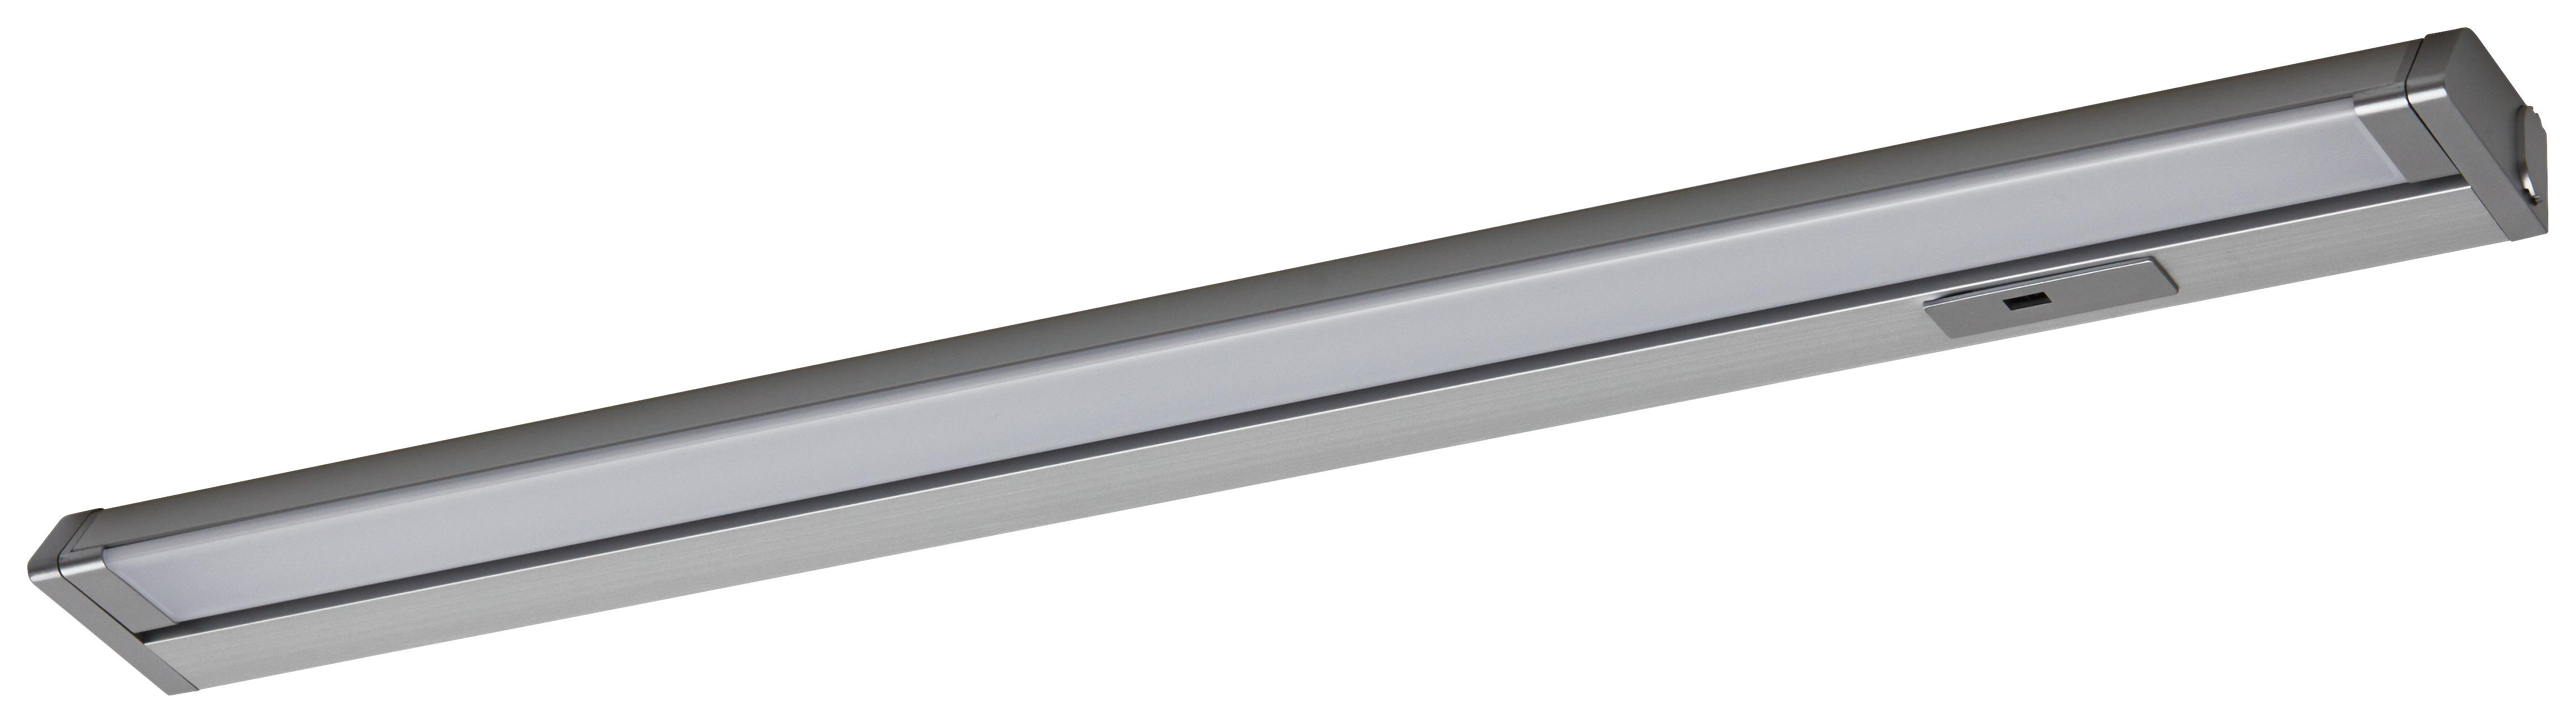 HÖLSCHER LED-Leuchten Cabinet Light Alu Metall B/H/T: ca. 56x2,5x6,1 cm Cabinet Light - weiß/Alu (56,00/2,50/6,10cm)